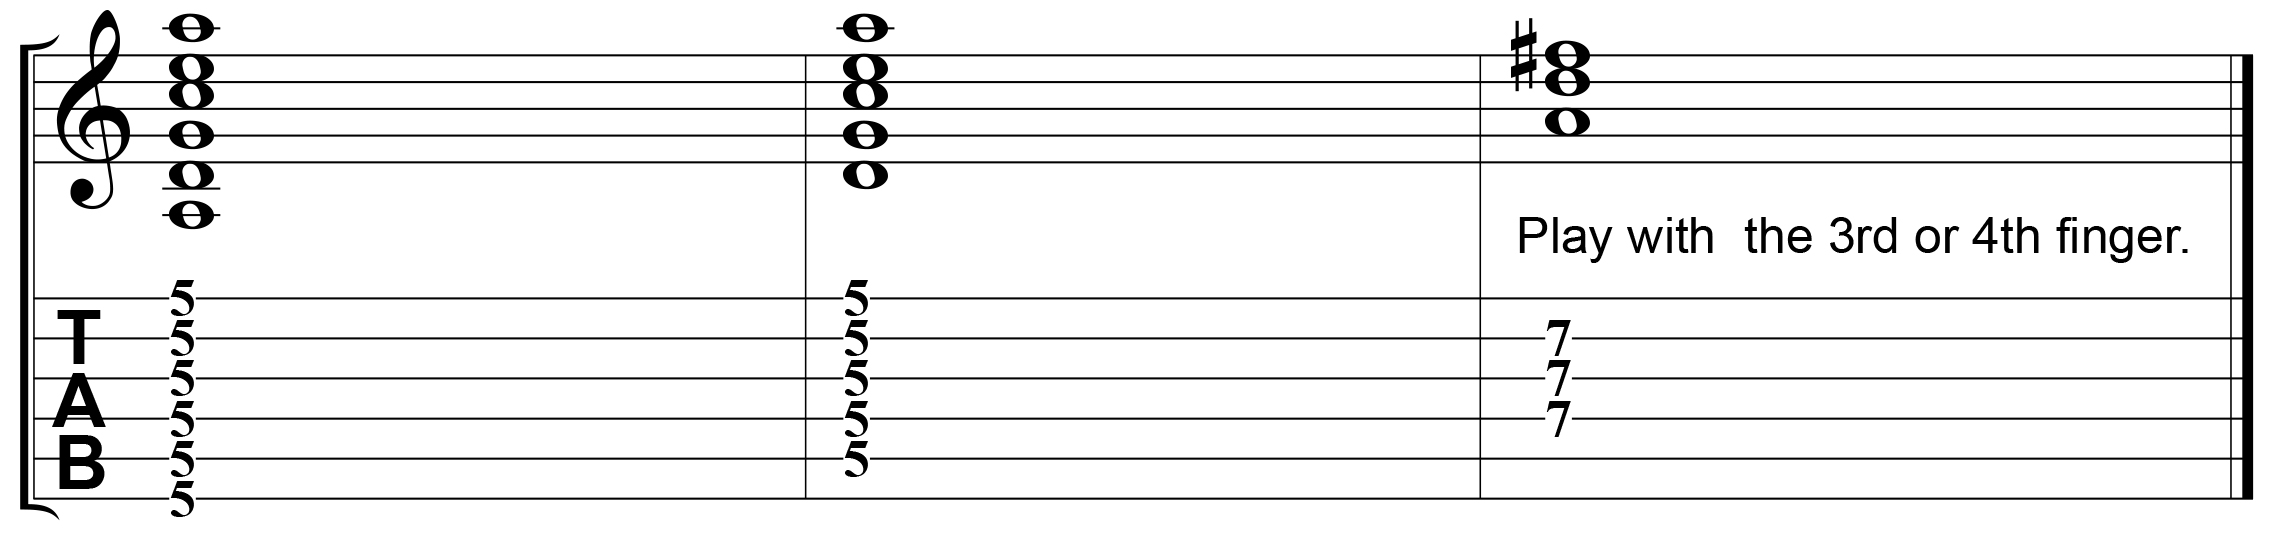 guitar blog - 7 tips barre chords - ex 1-2